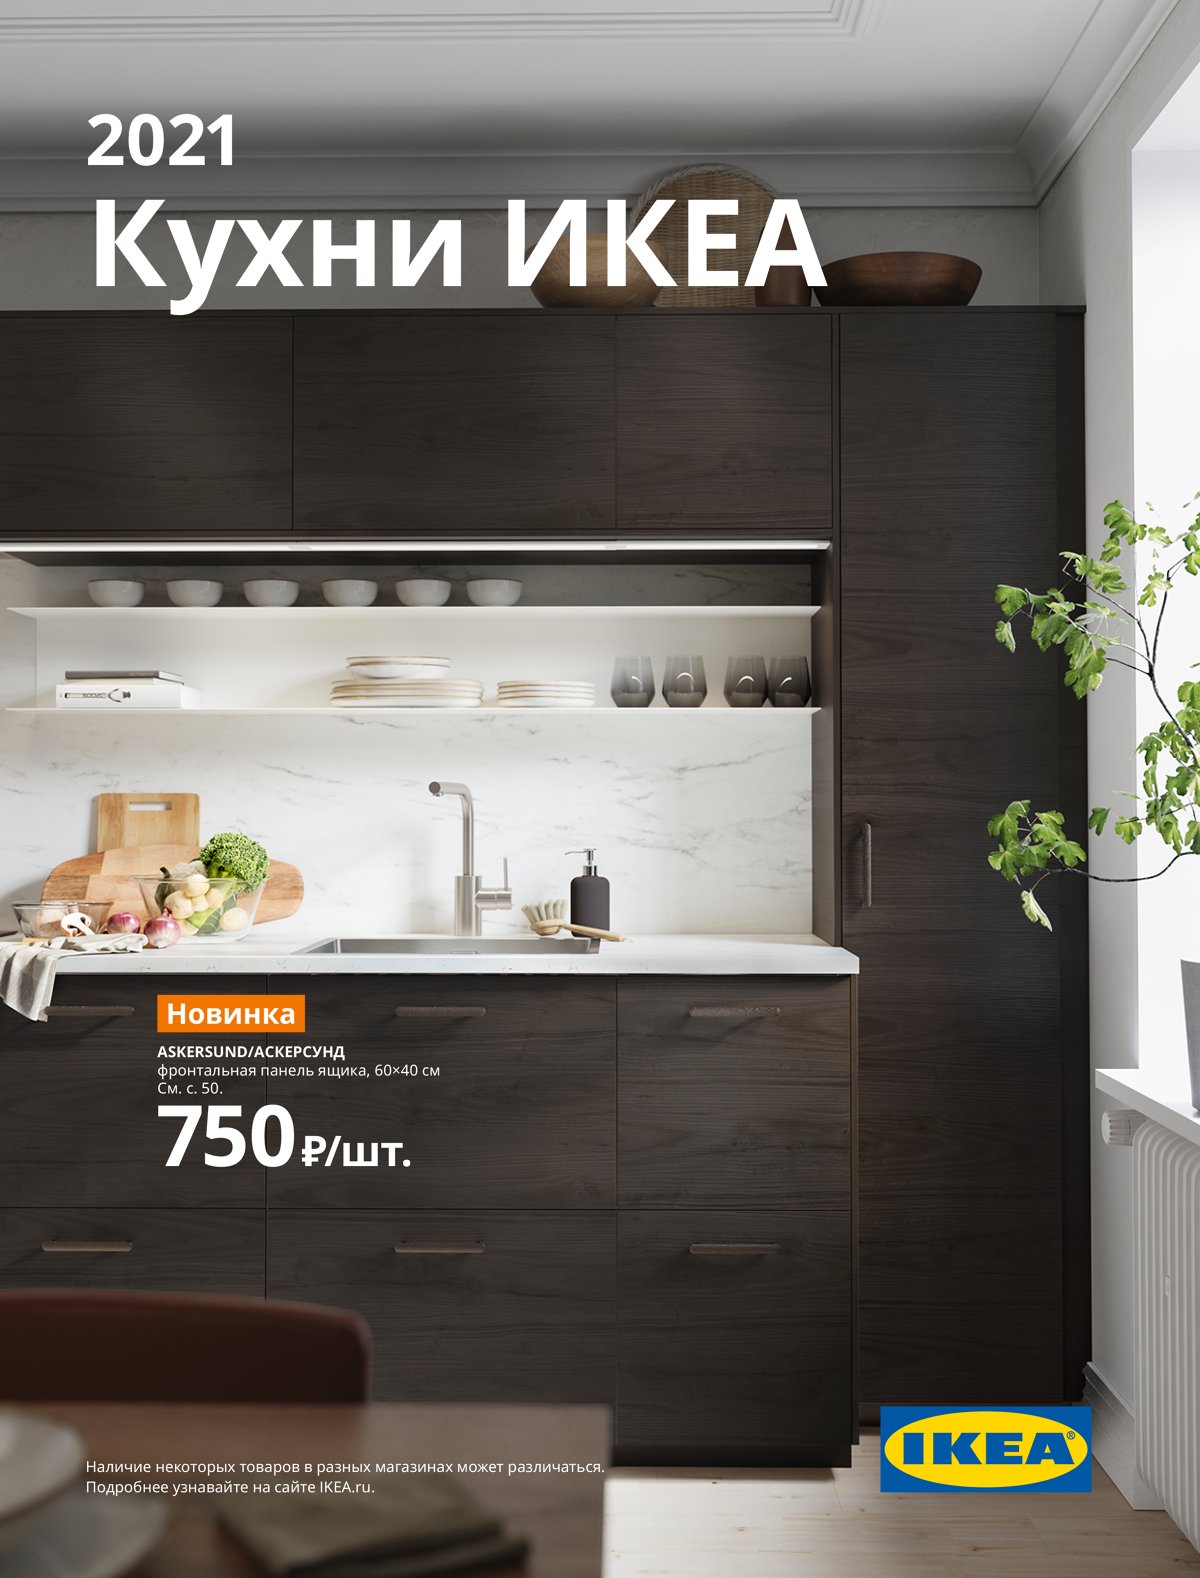 Кухни В Икеа Новосибирске Цены И Фото